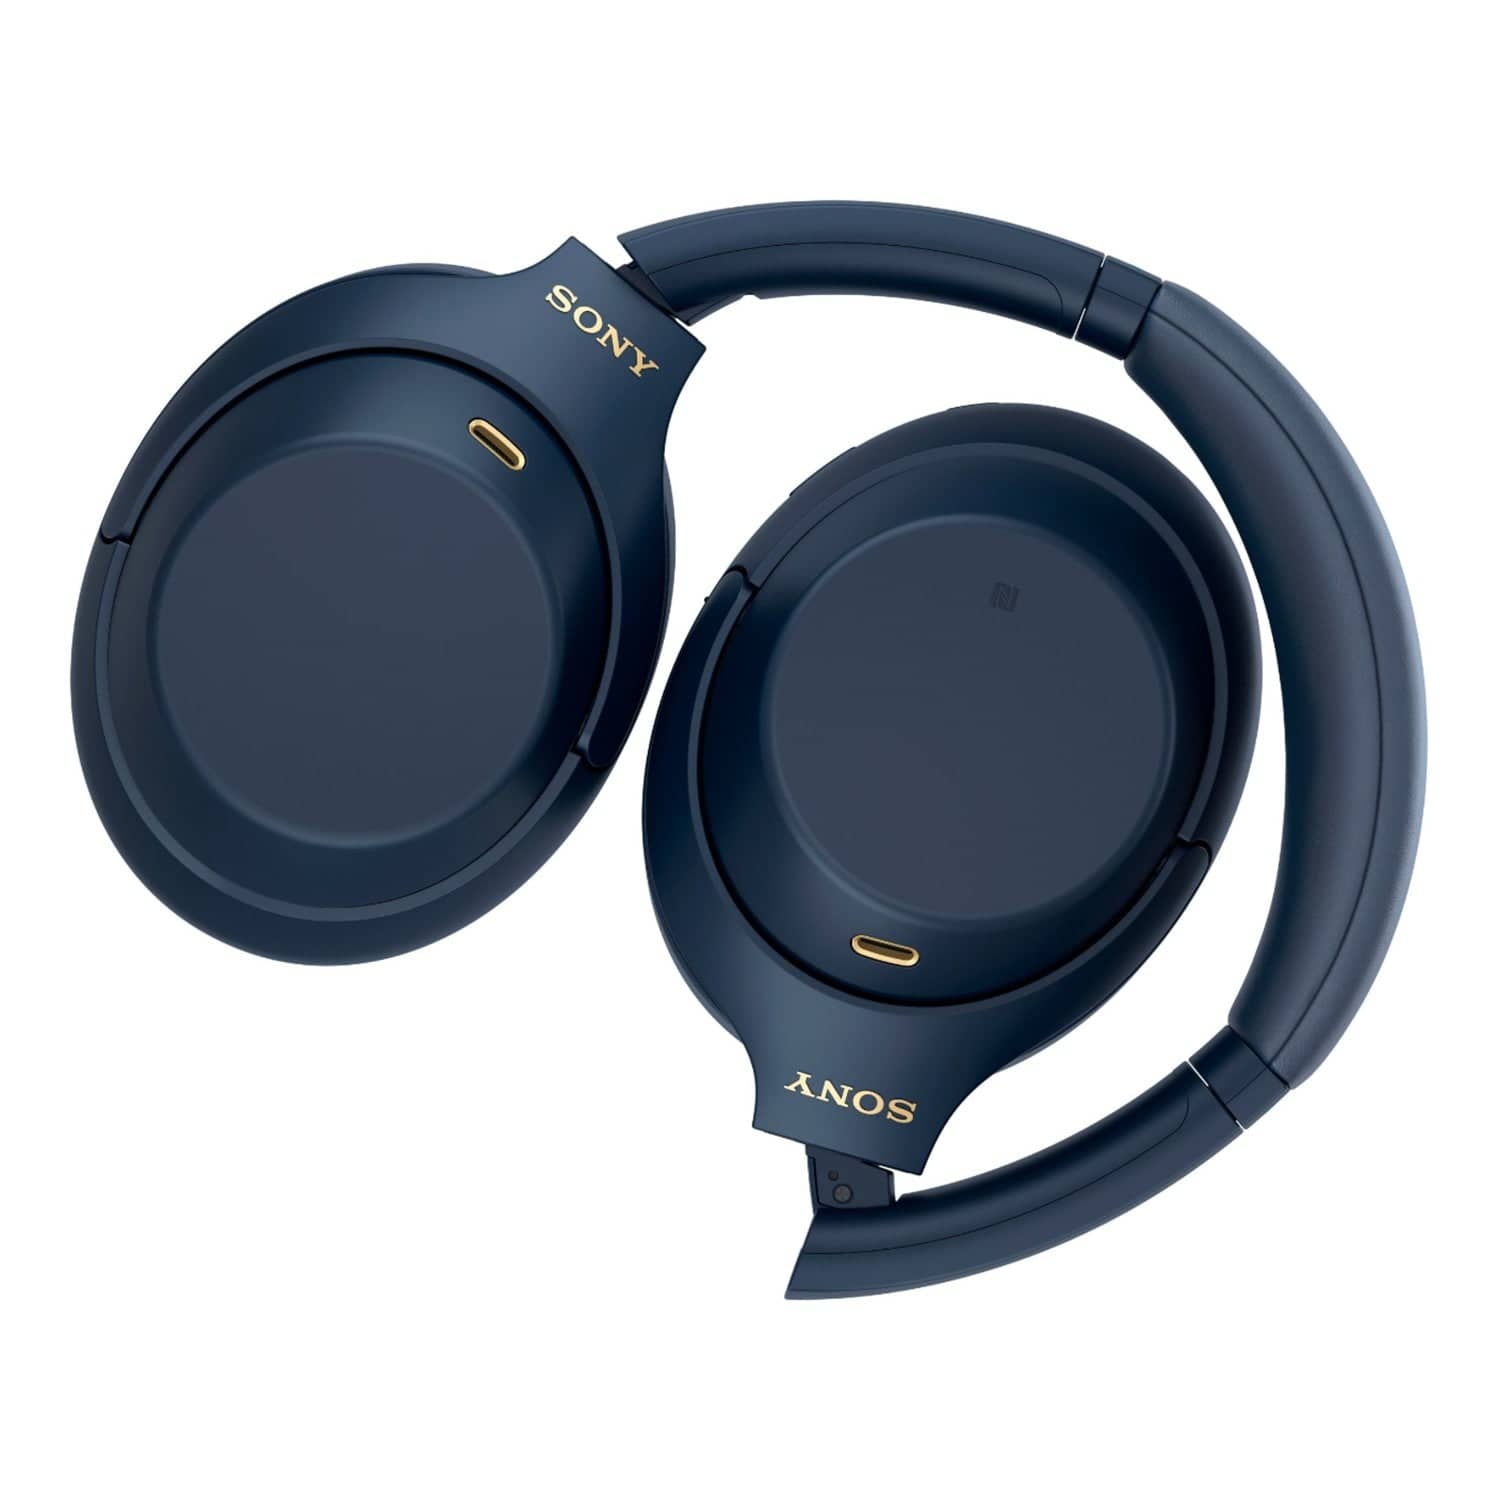 Sony WH-1000XM4 headphones have subtle design changes - CNET